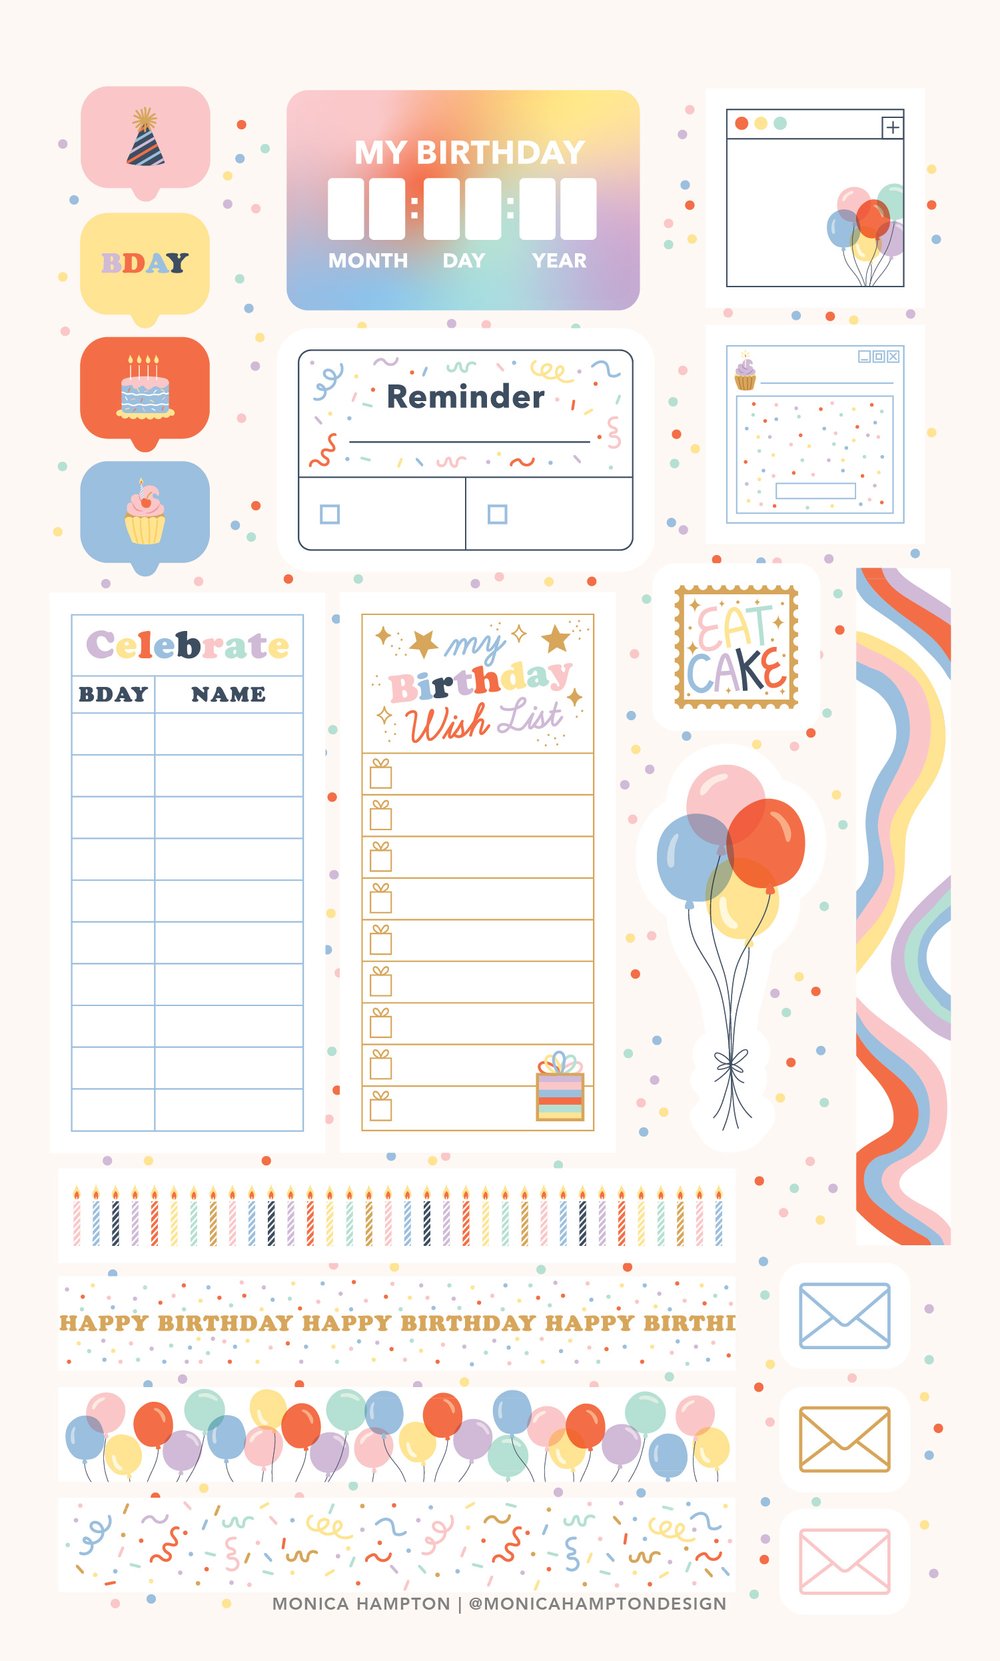 Shopping Planner Sticker Sheet – Kittie Treats Shop